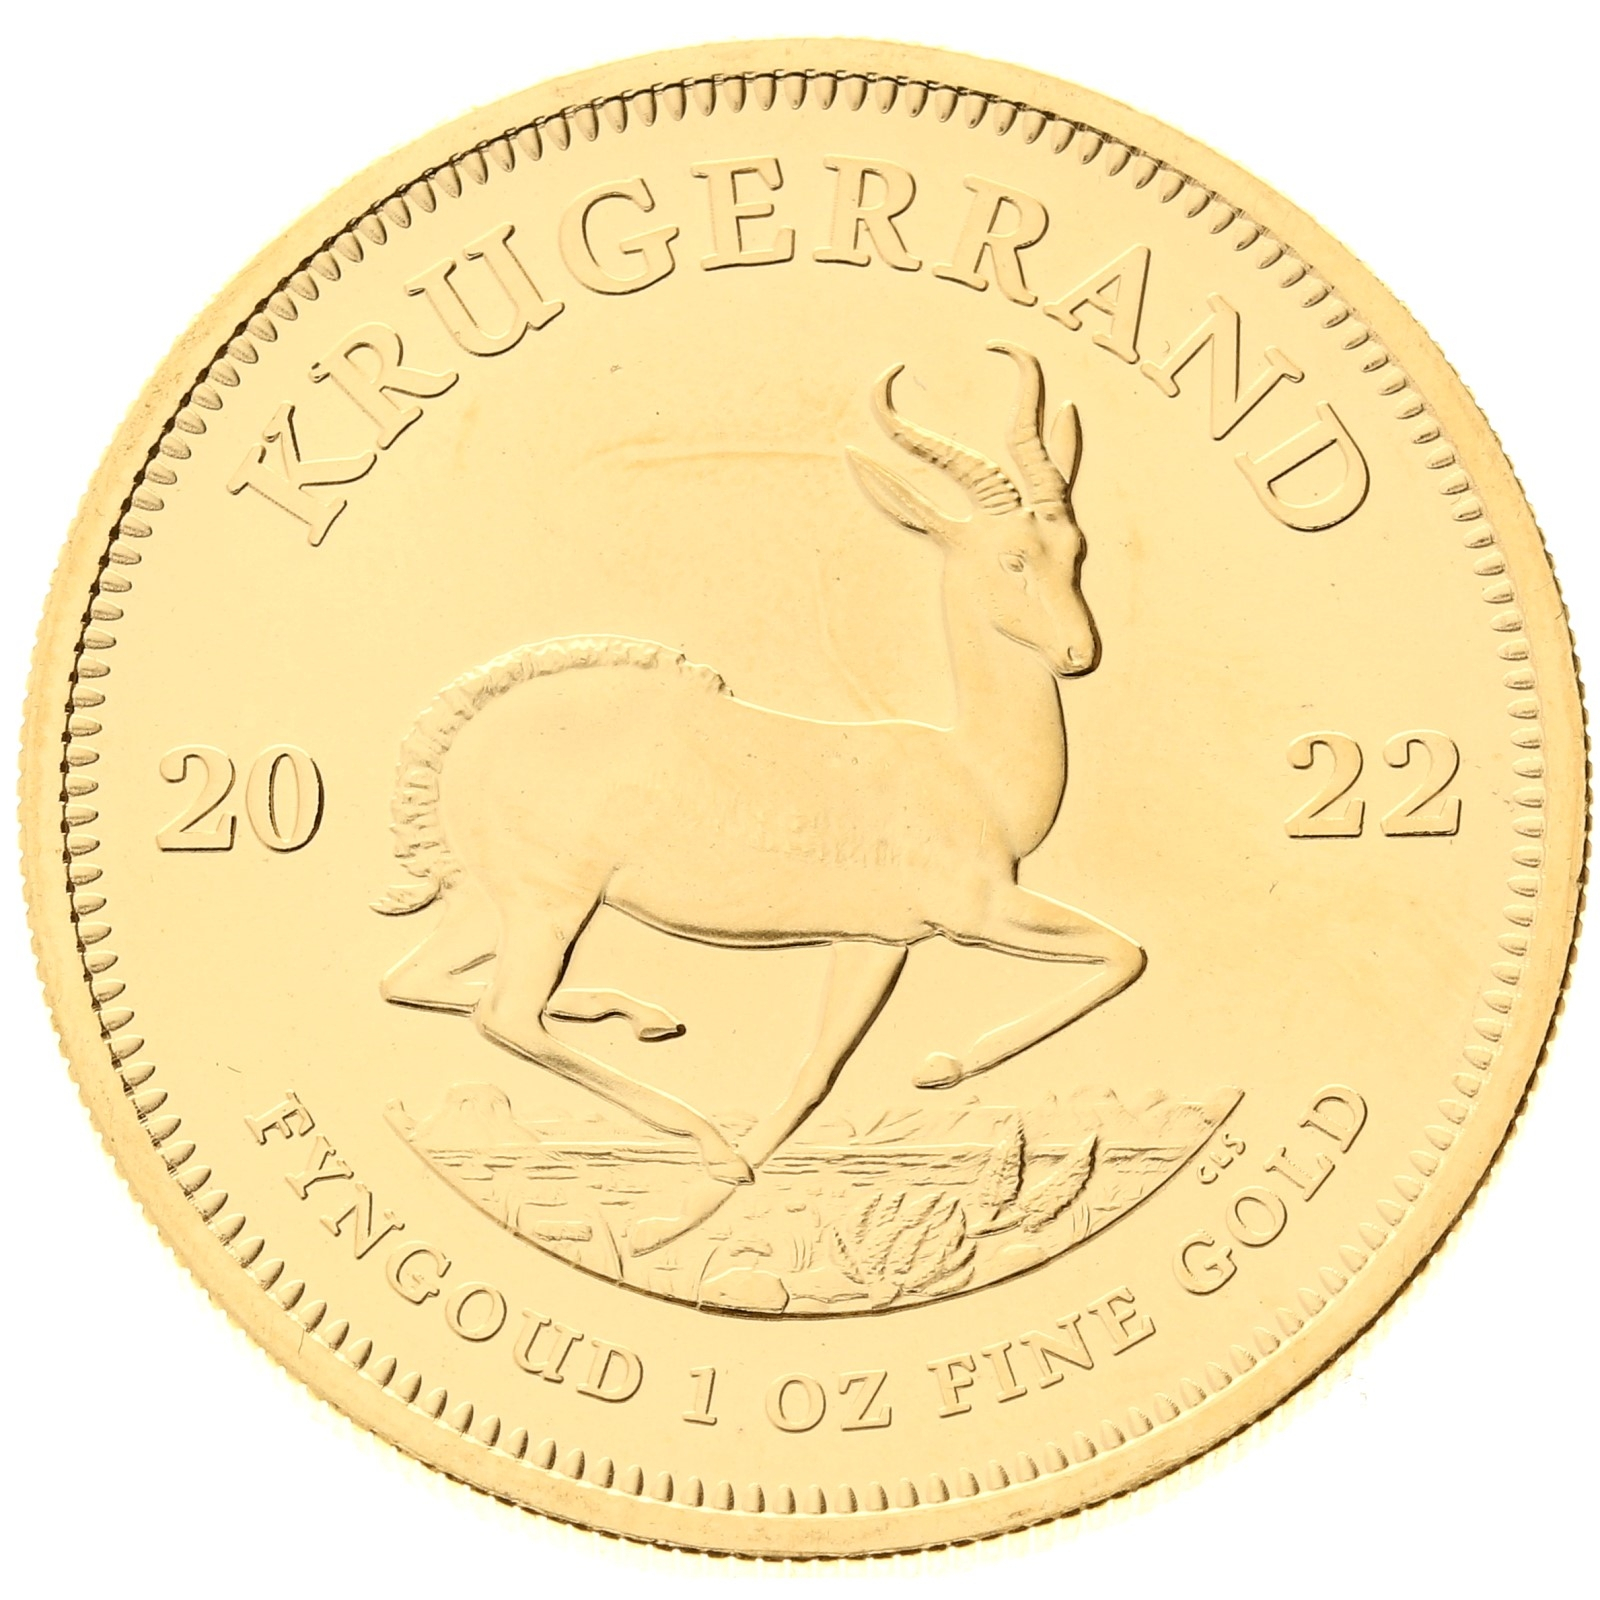 South Africa - 1 Krugerrand - 2022 - 1oz gold 